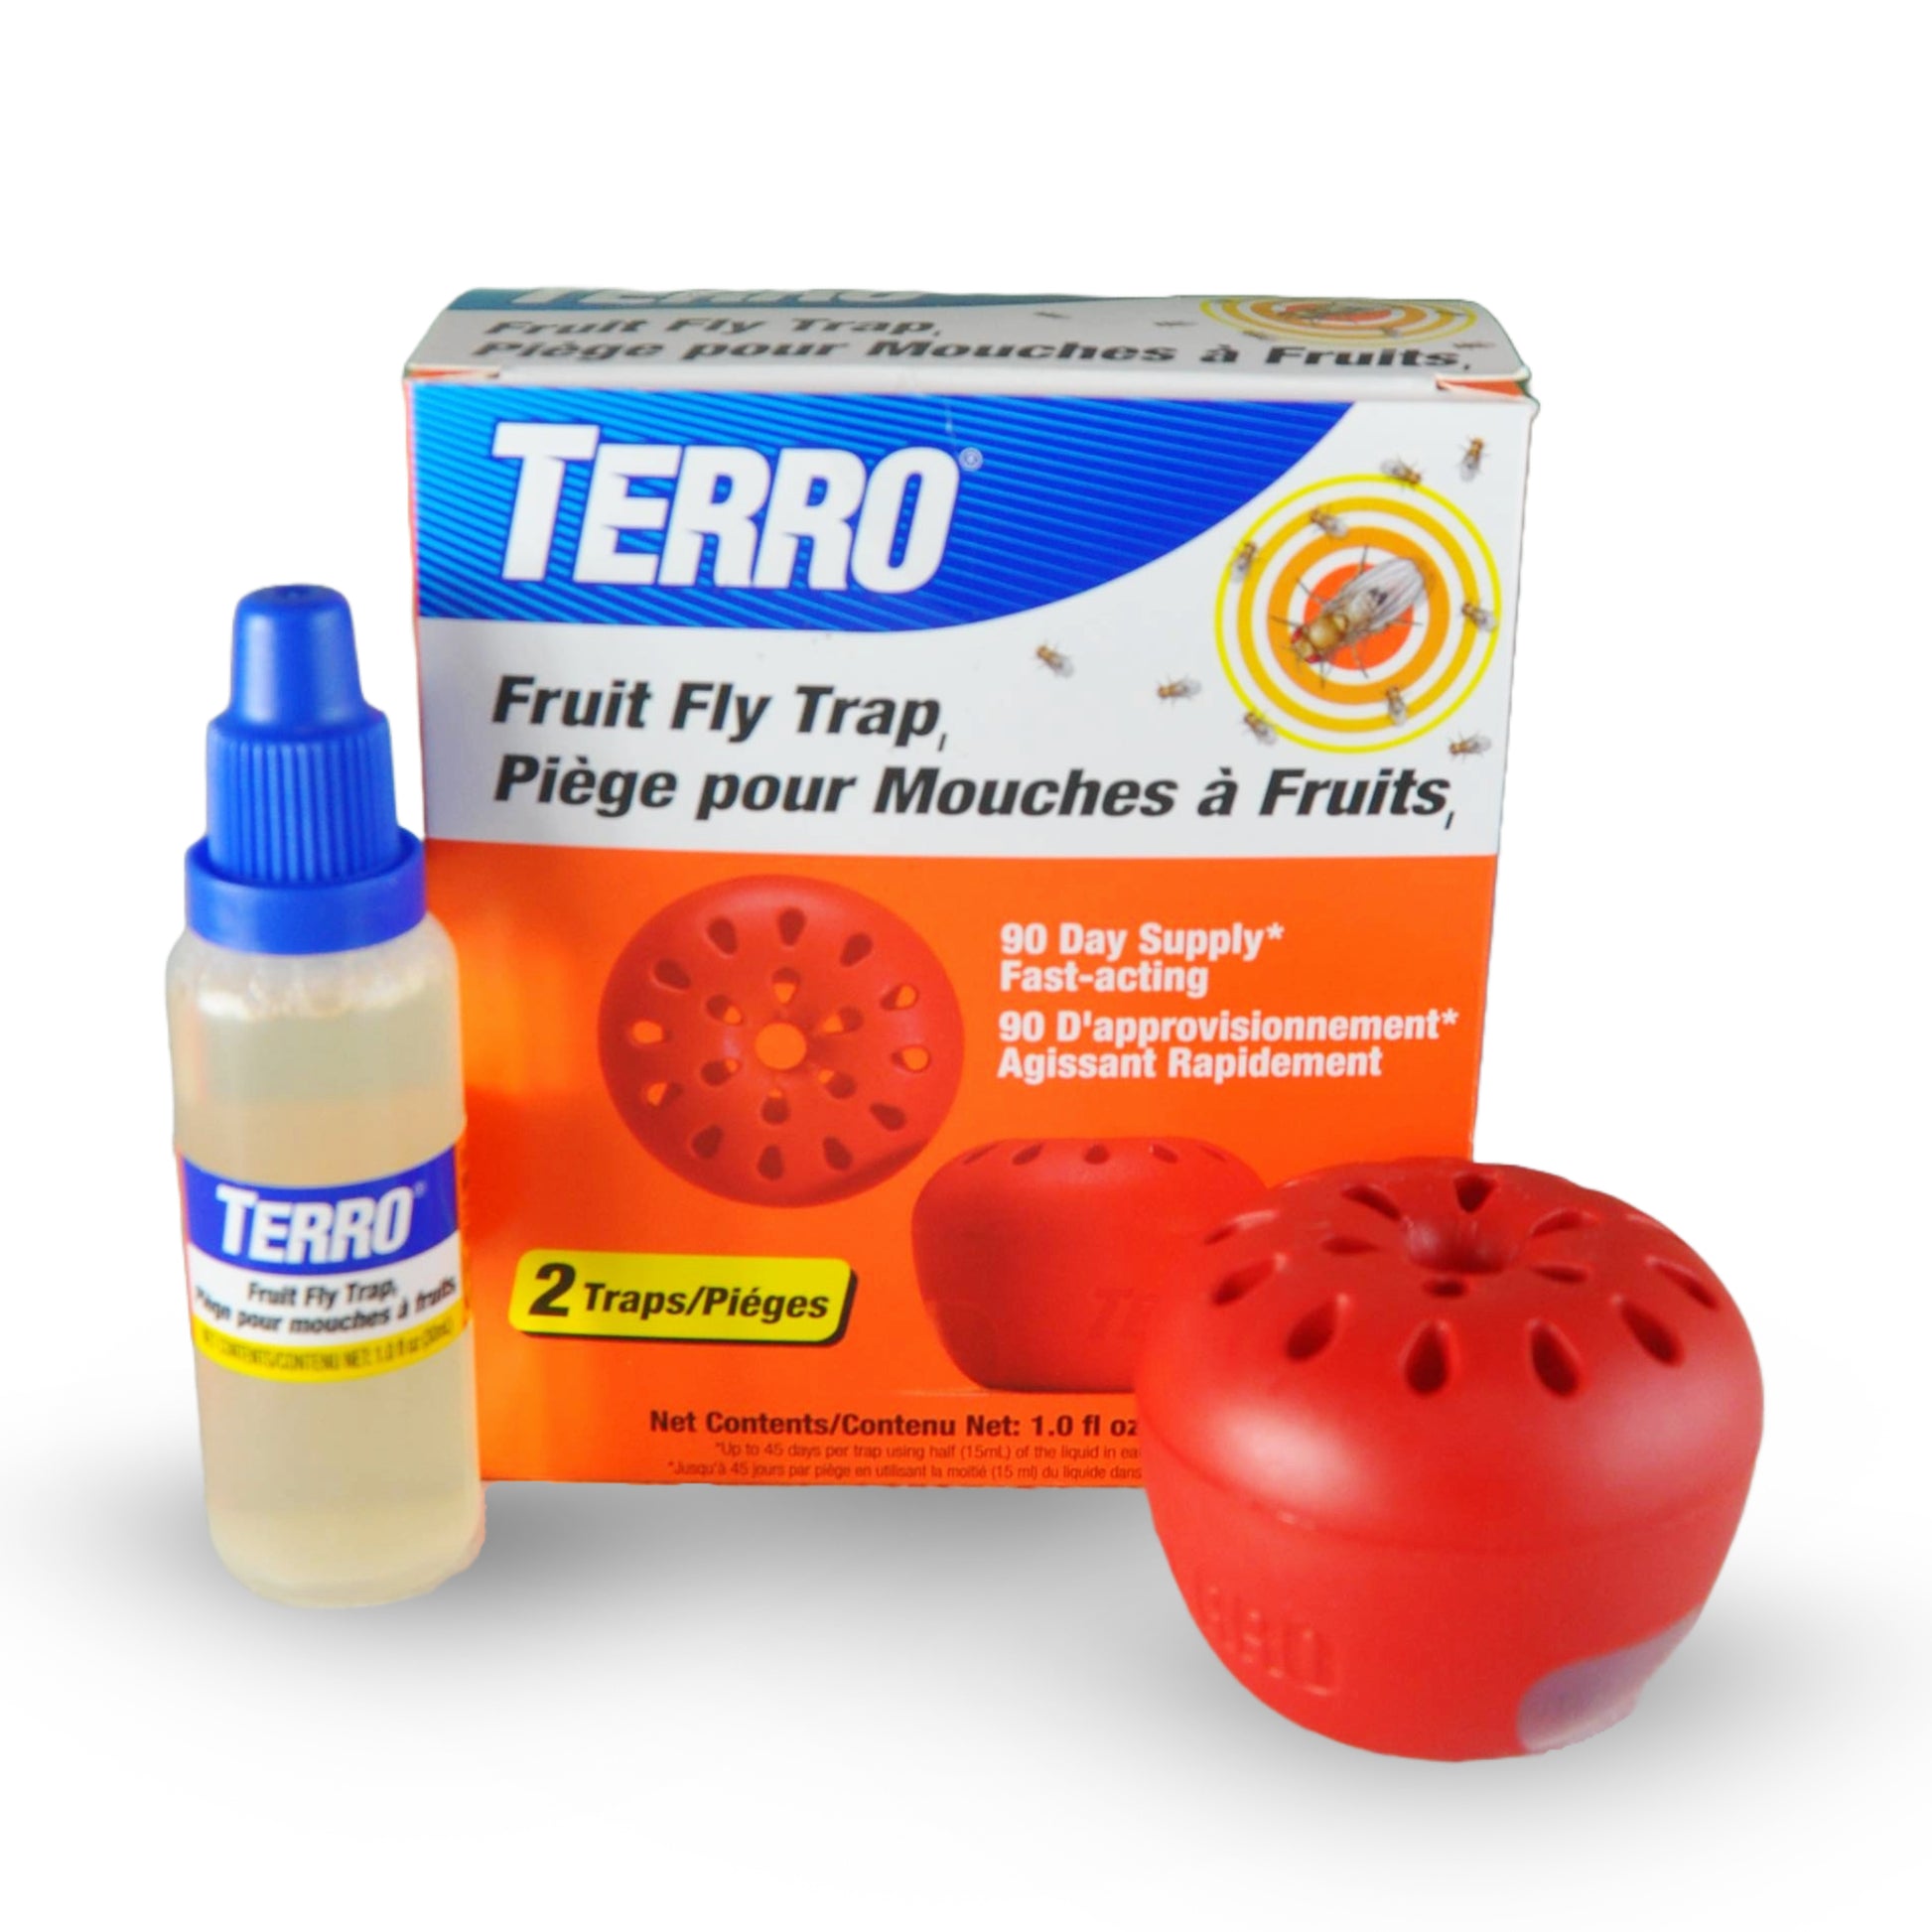 TERRO, fruit fly trap